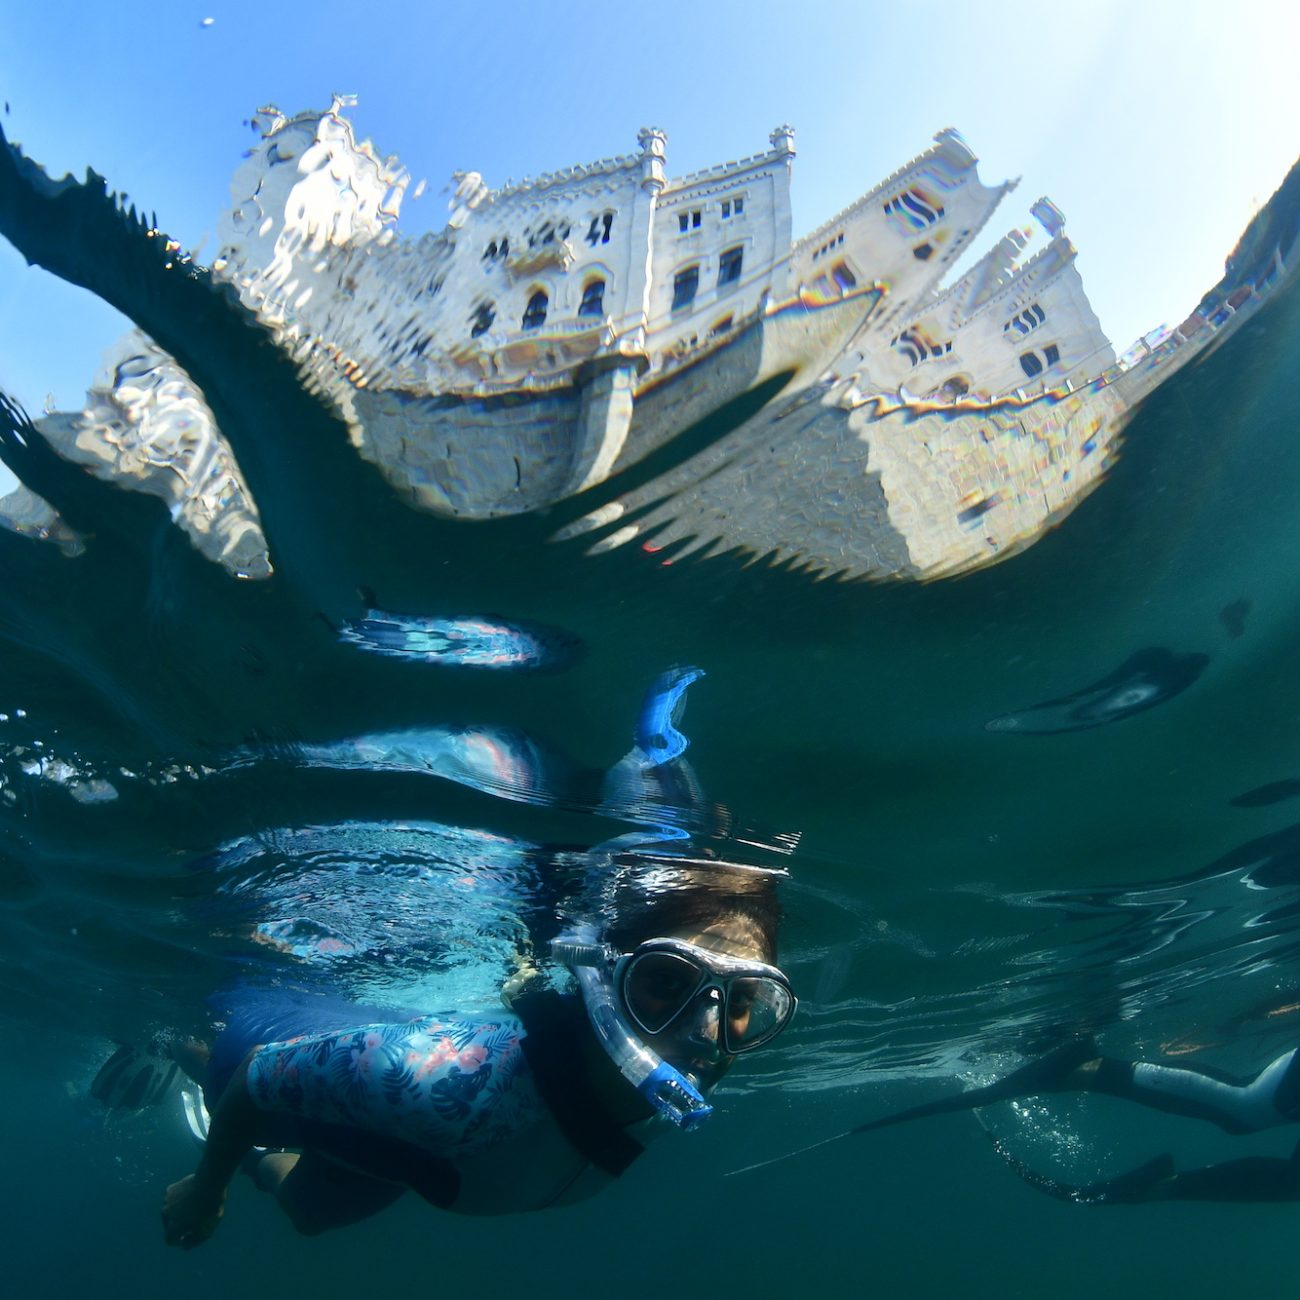 Snorkeling_sotto_al_castello_amp_miramare